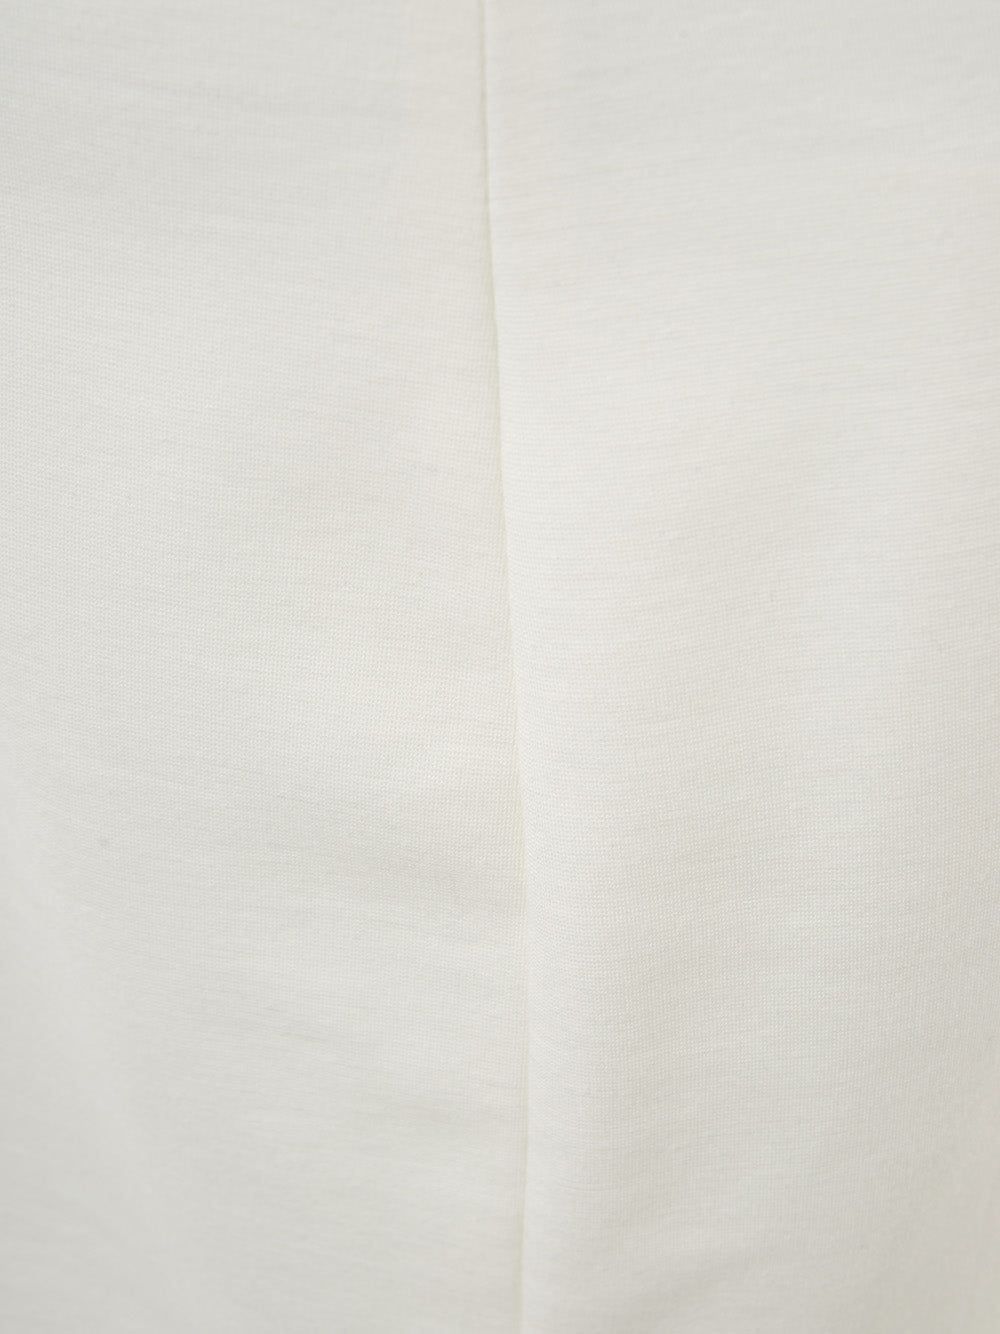 Lardini White Viscose Pencil Skirt